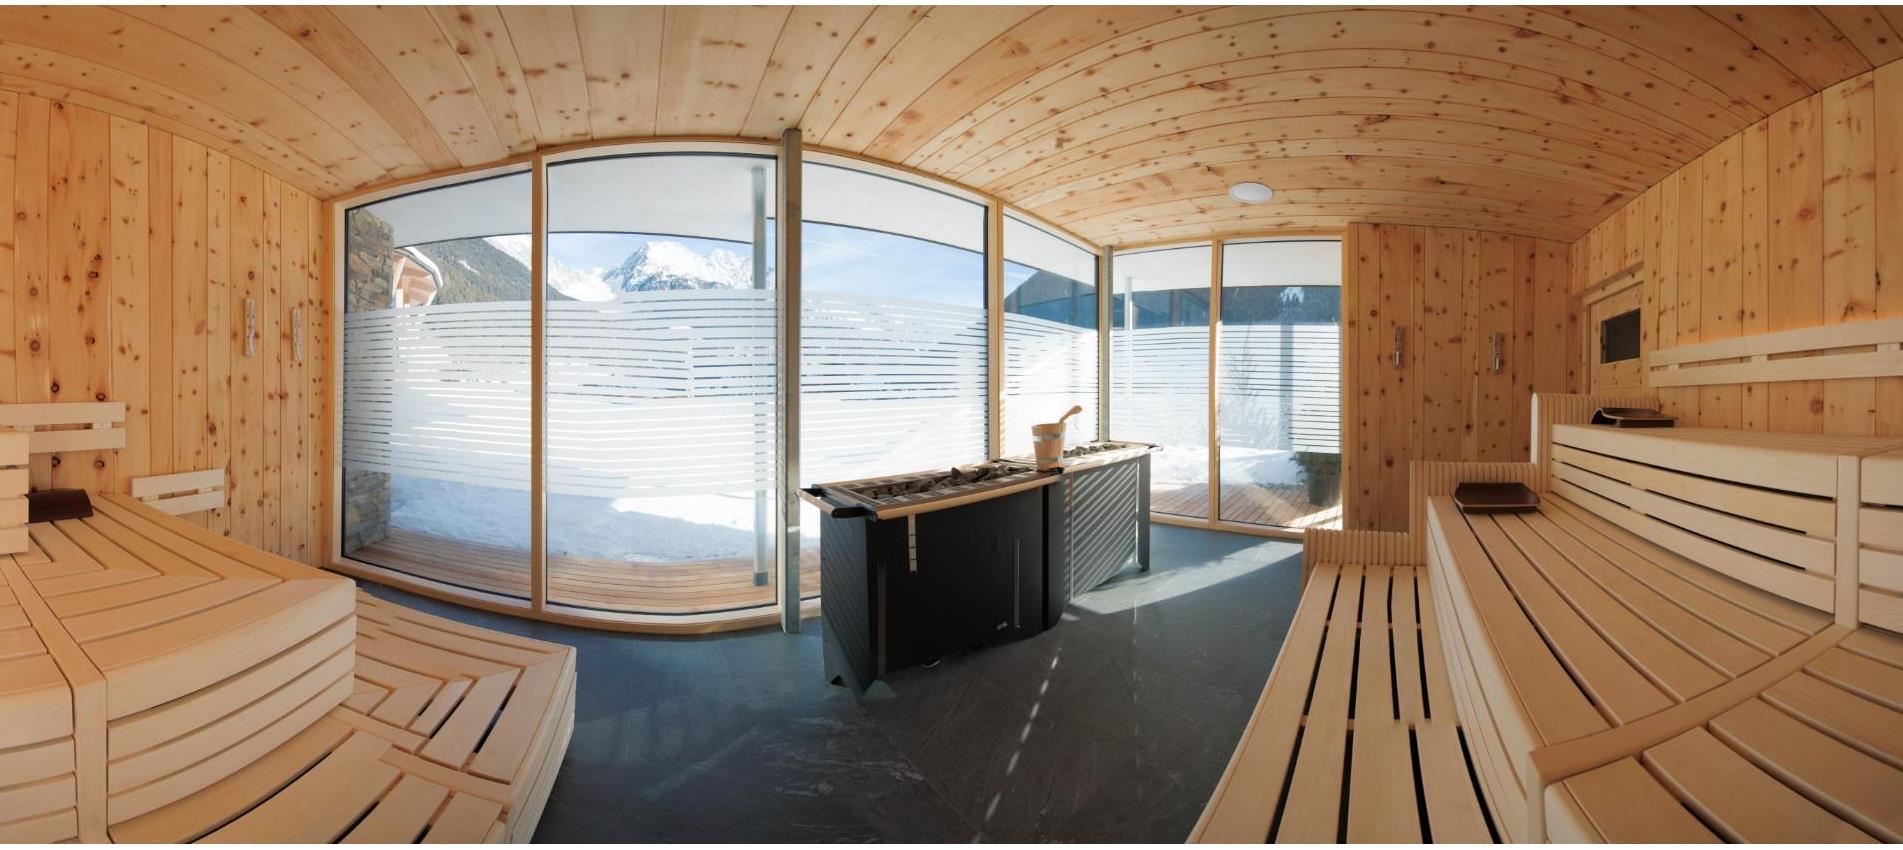 La nuova sauna panoramica